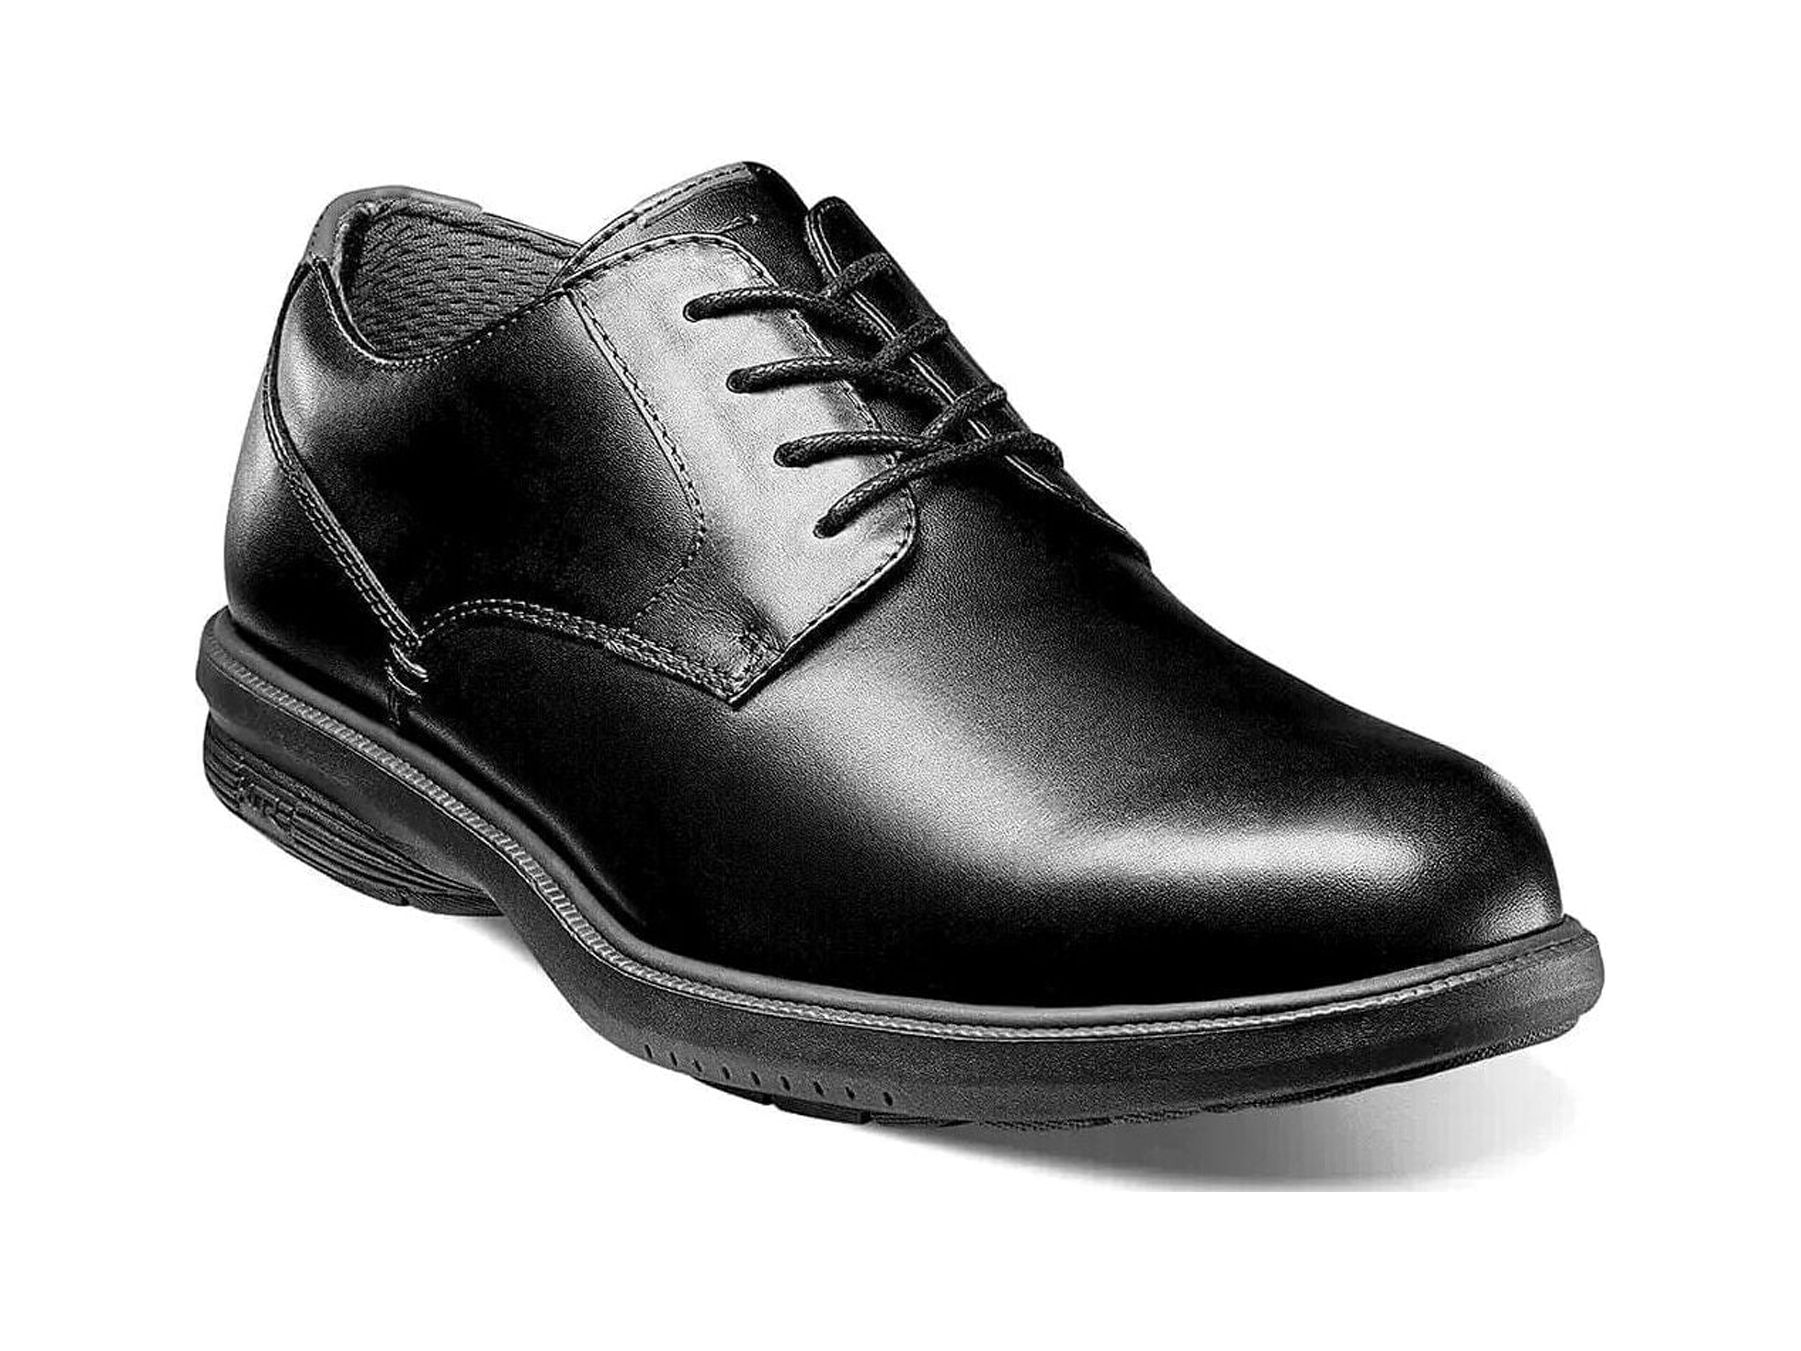 Nunn Bush Marvin Street Plain Toe Oxford Shoes Kore Leather Black 84715-001 - image 1 of 7